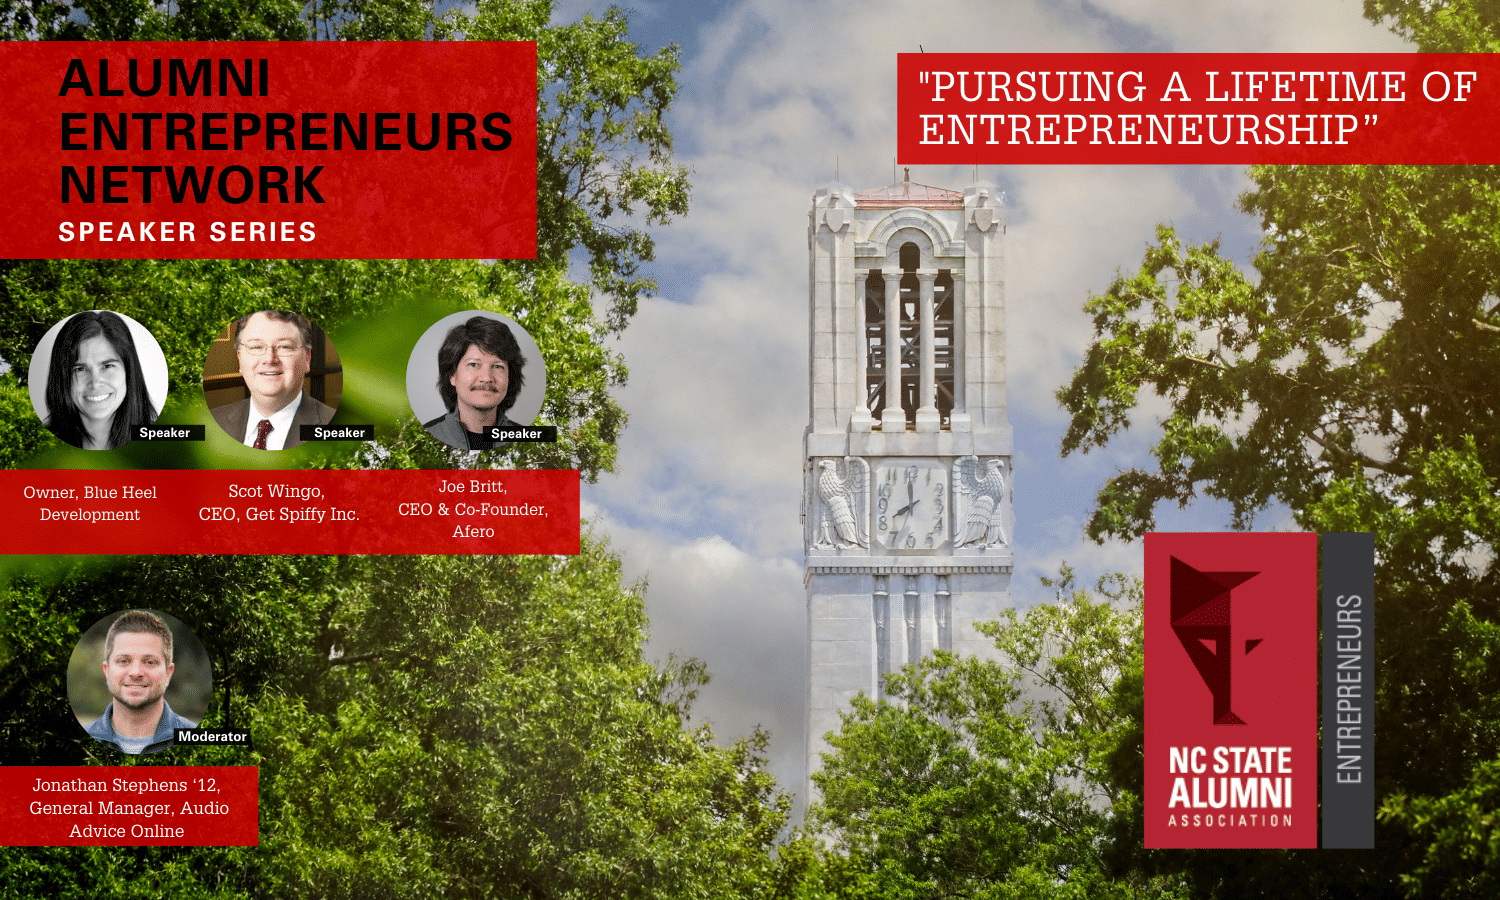 Alumni Entrepreneurs Network speaker series. "Pursuing a lifetime of entrepreneurship"